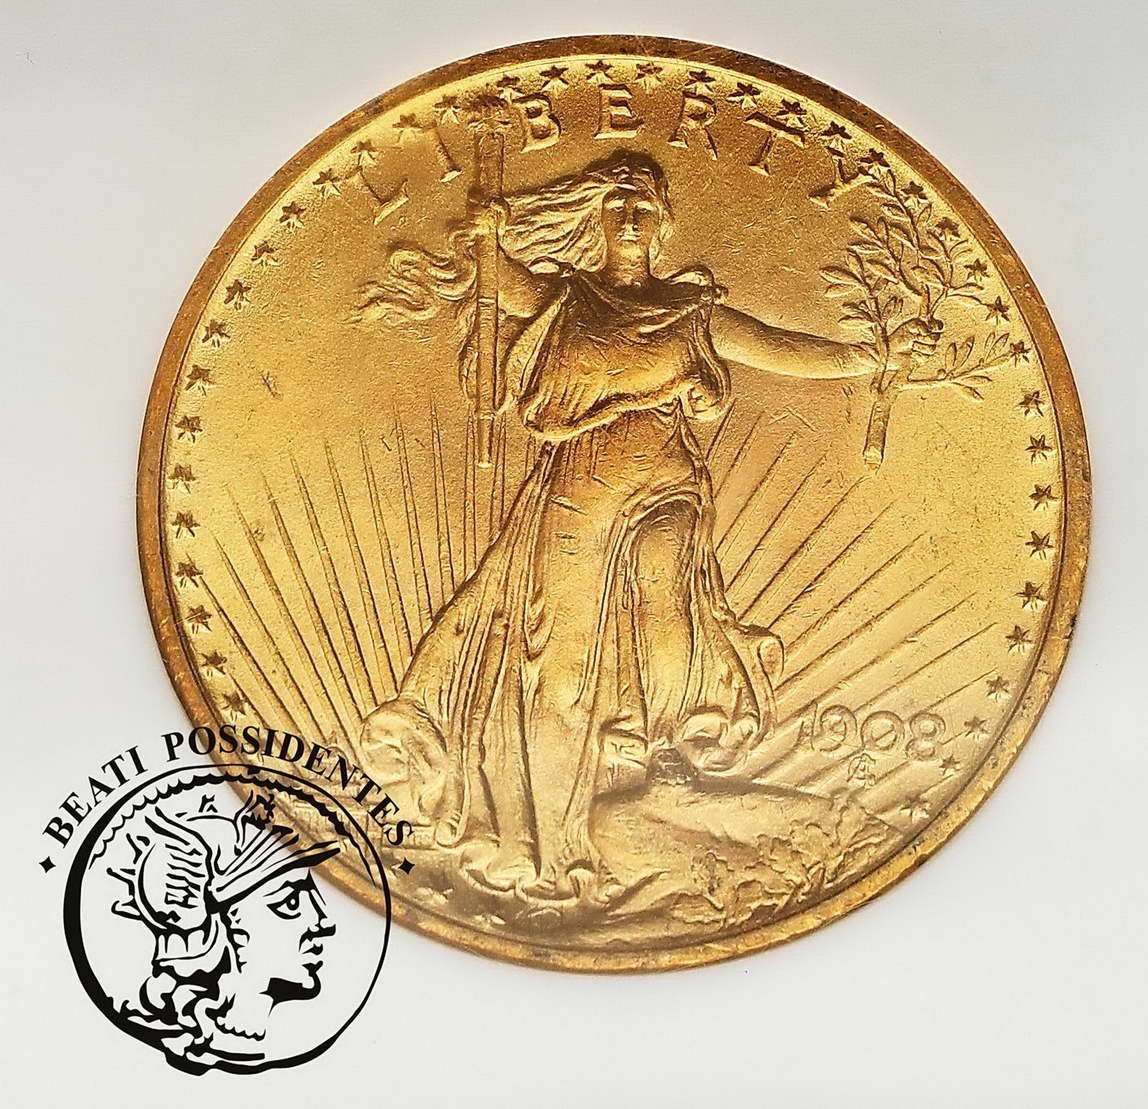 USA 20 dolarów 1908 Philadelphia NGC MS 63